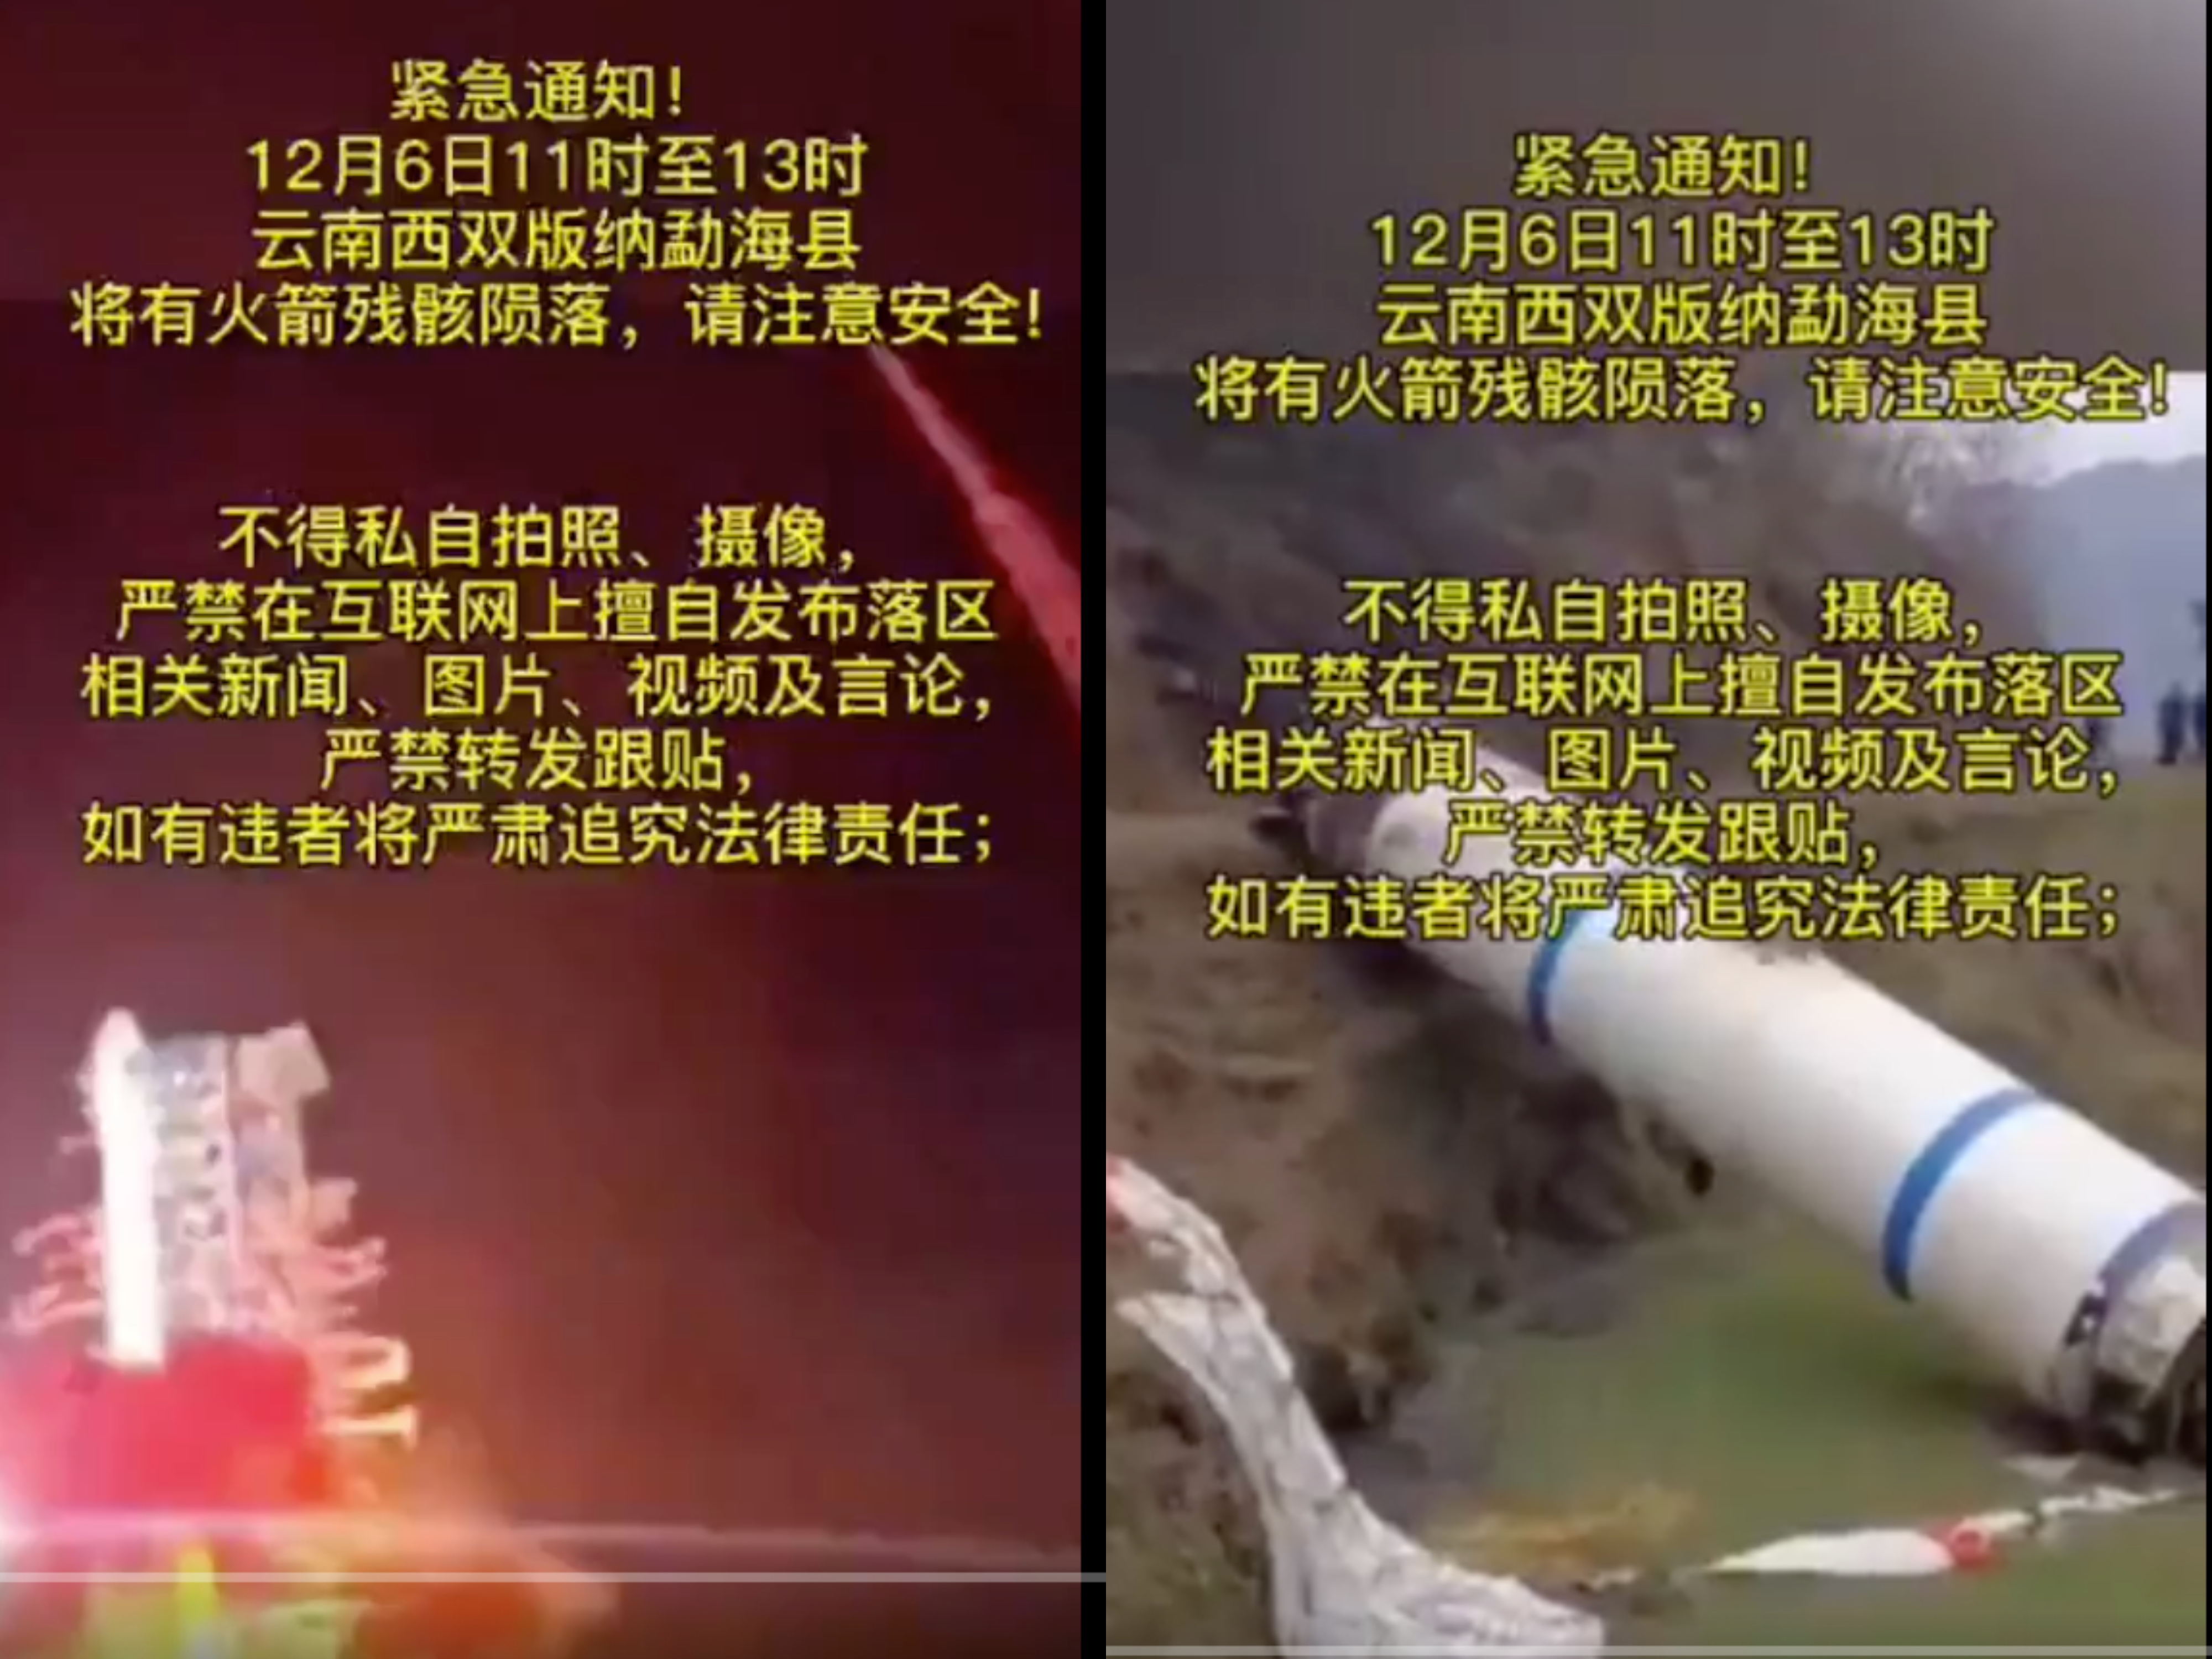 中共長征三號火箭殘骸掉落雲南省境內。不過官方發佈公告嚴禁拍照或在網上討論，引發關注。（影片截圖）